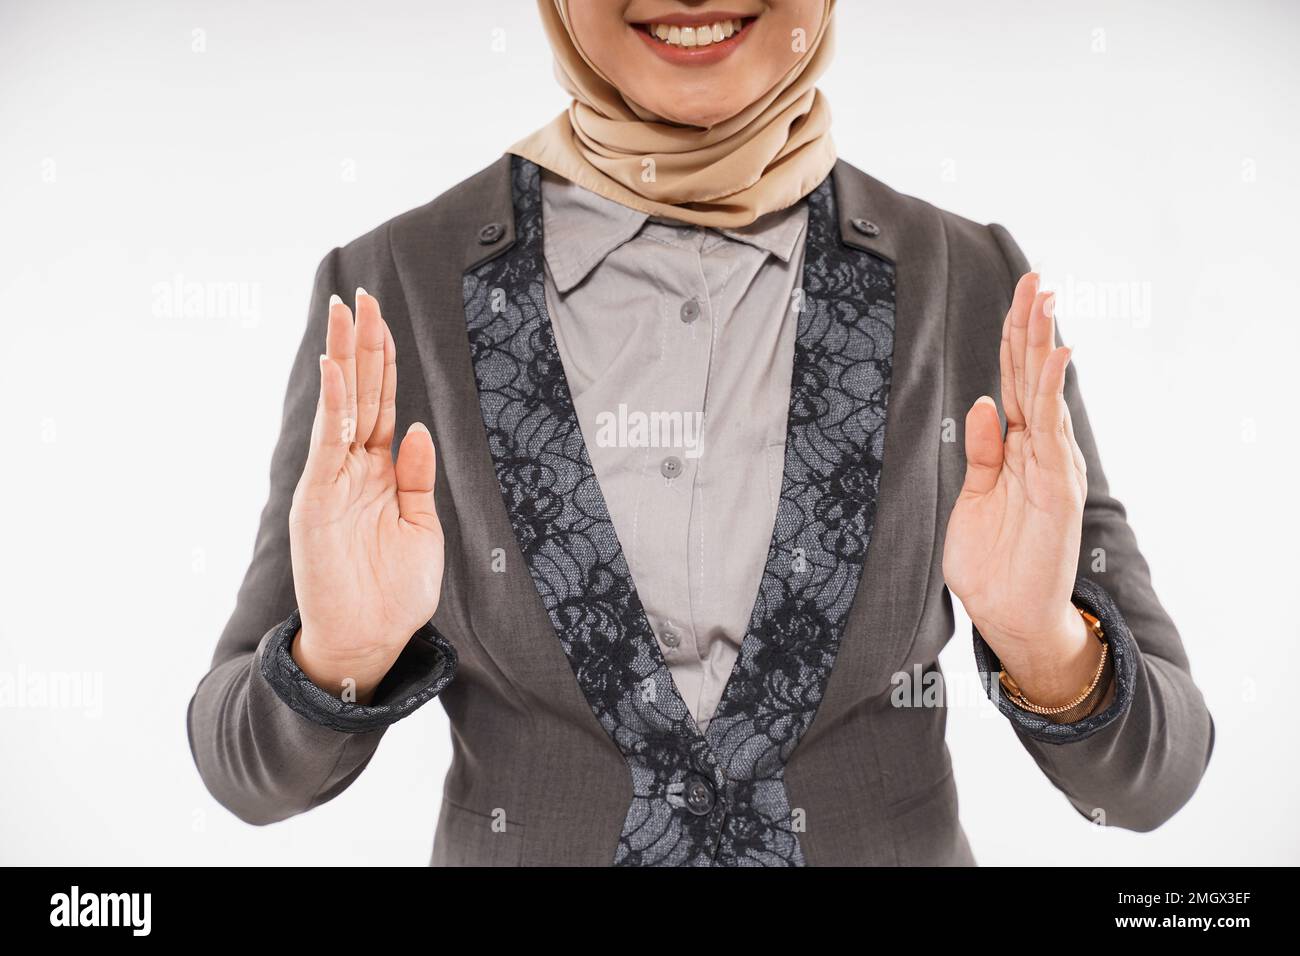 une femme avec hijab a ouvert ses mains avec l'espace vide entre Banque D'Images